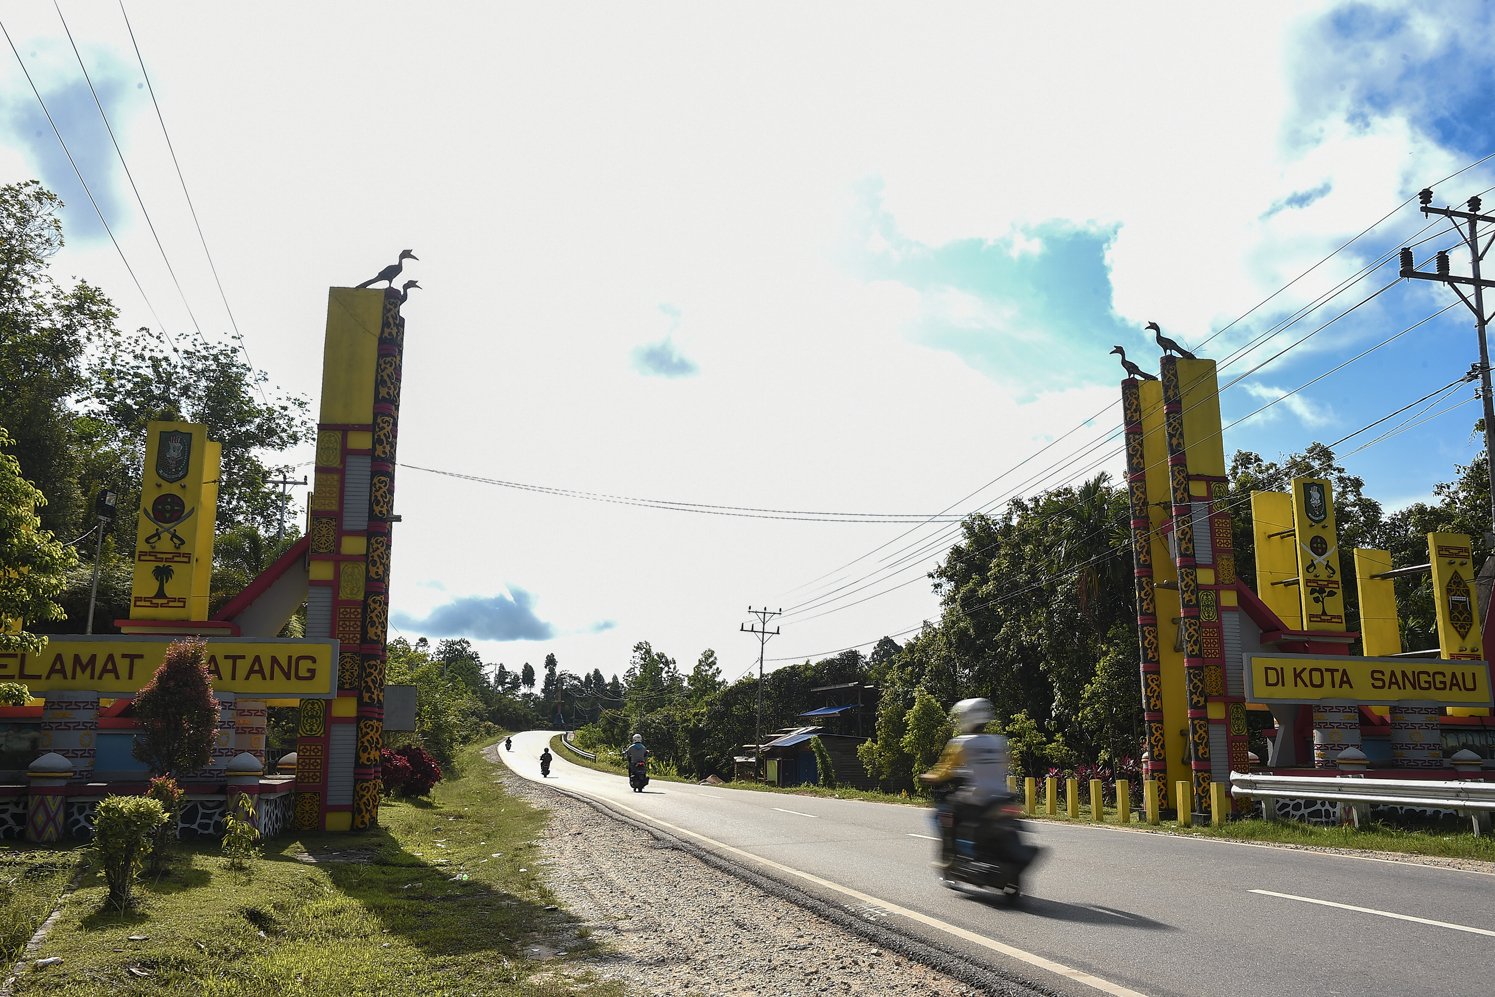 Pengendara melintasi tugu perbatasan Kabupaten Sanggau di Kalimantan Barat.